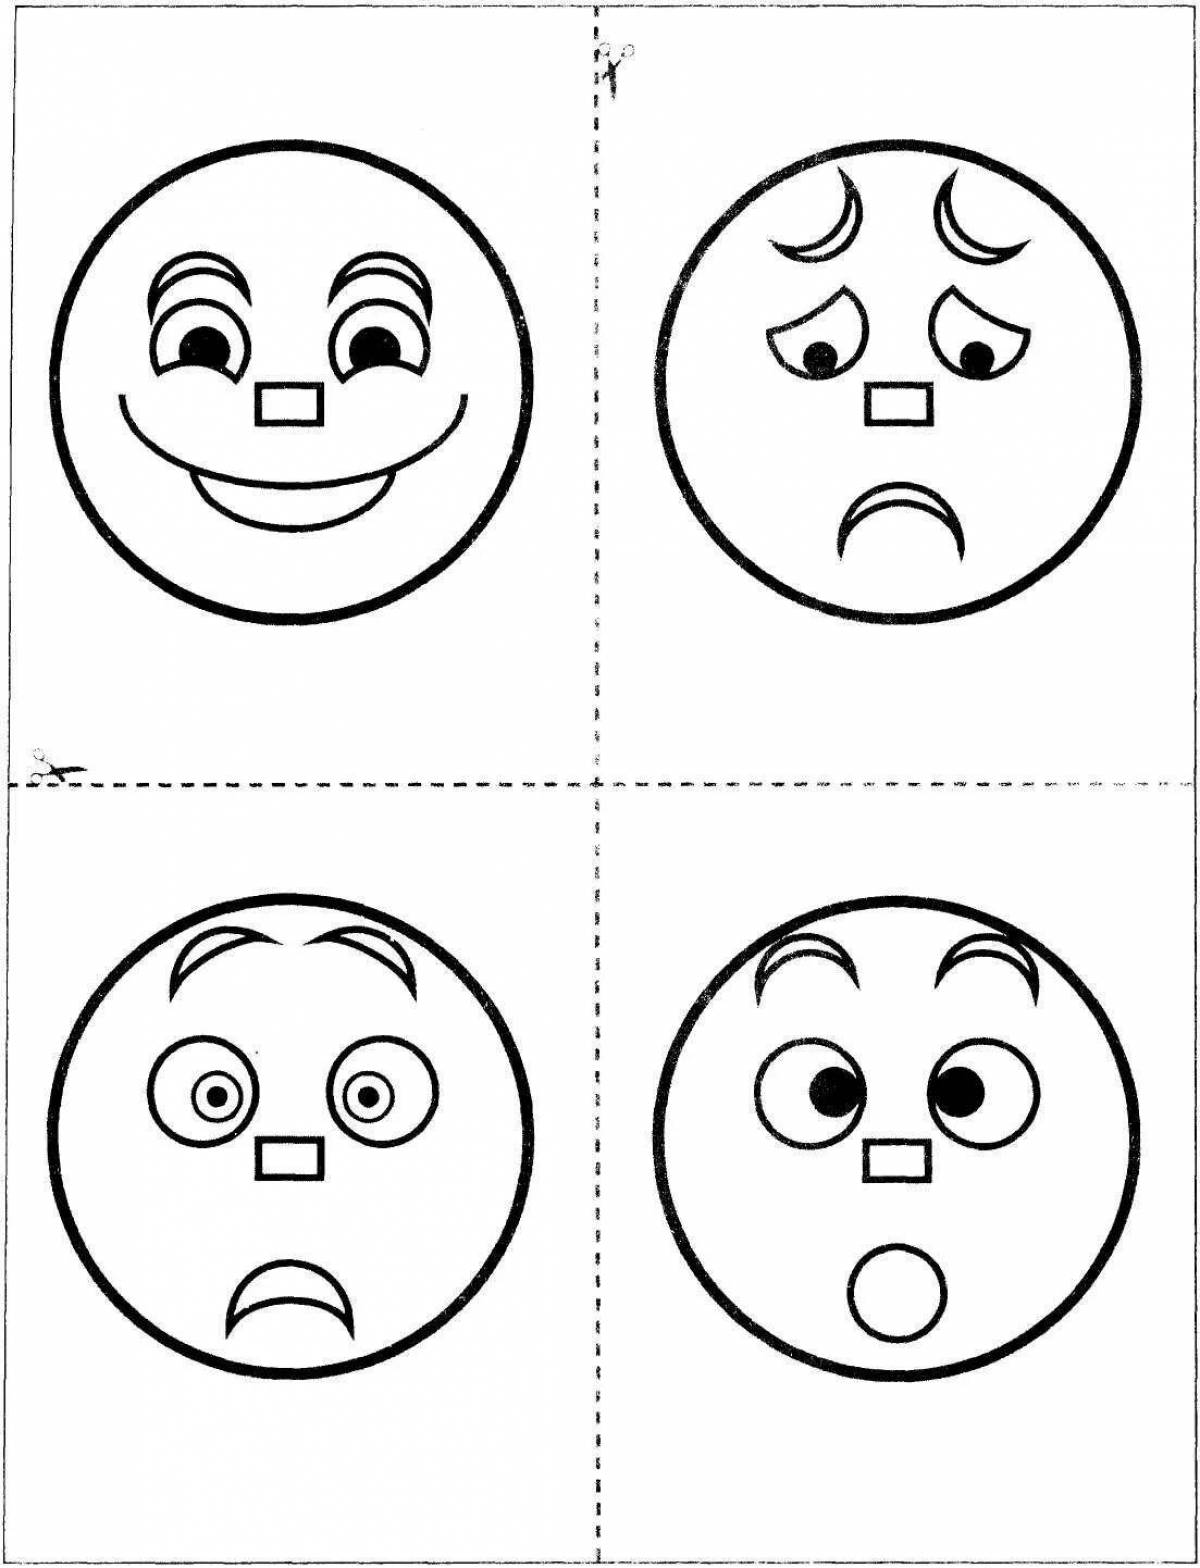 Fun emoji coloring page